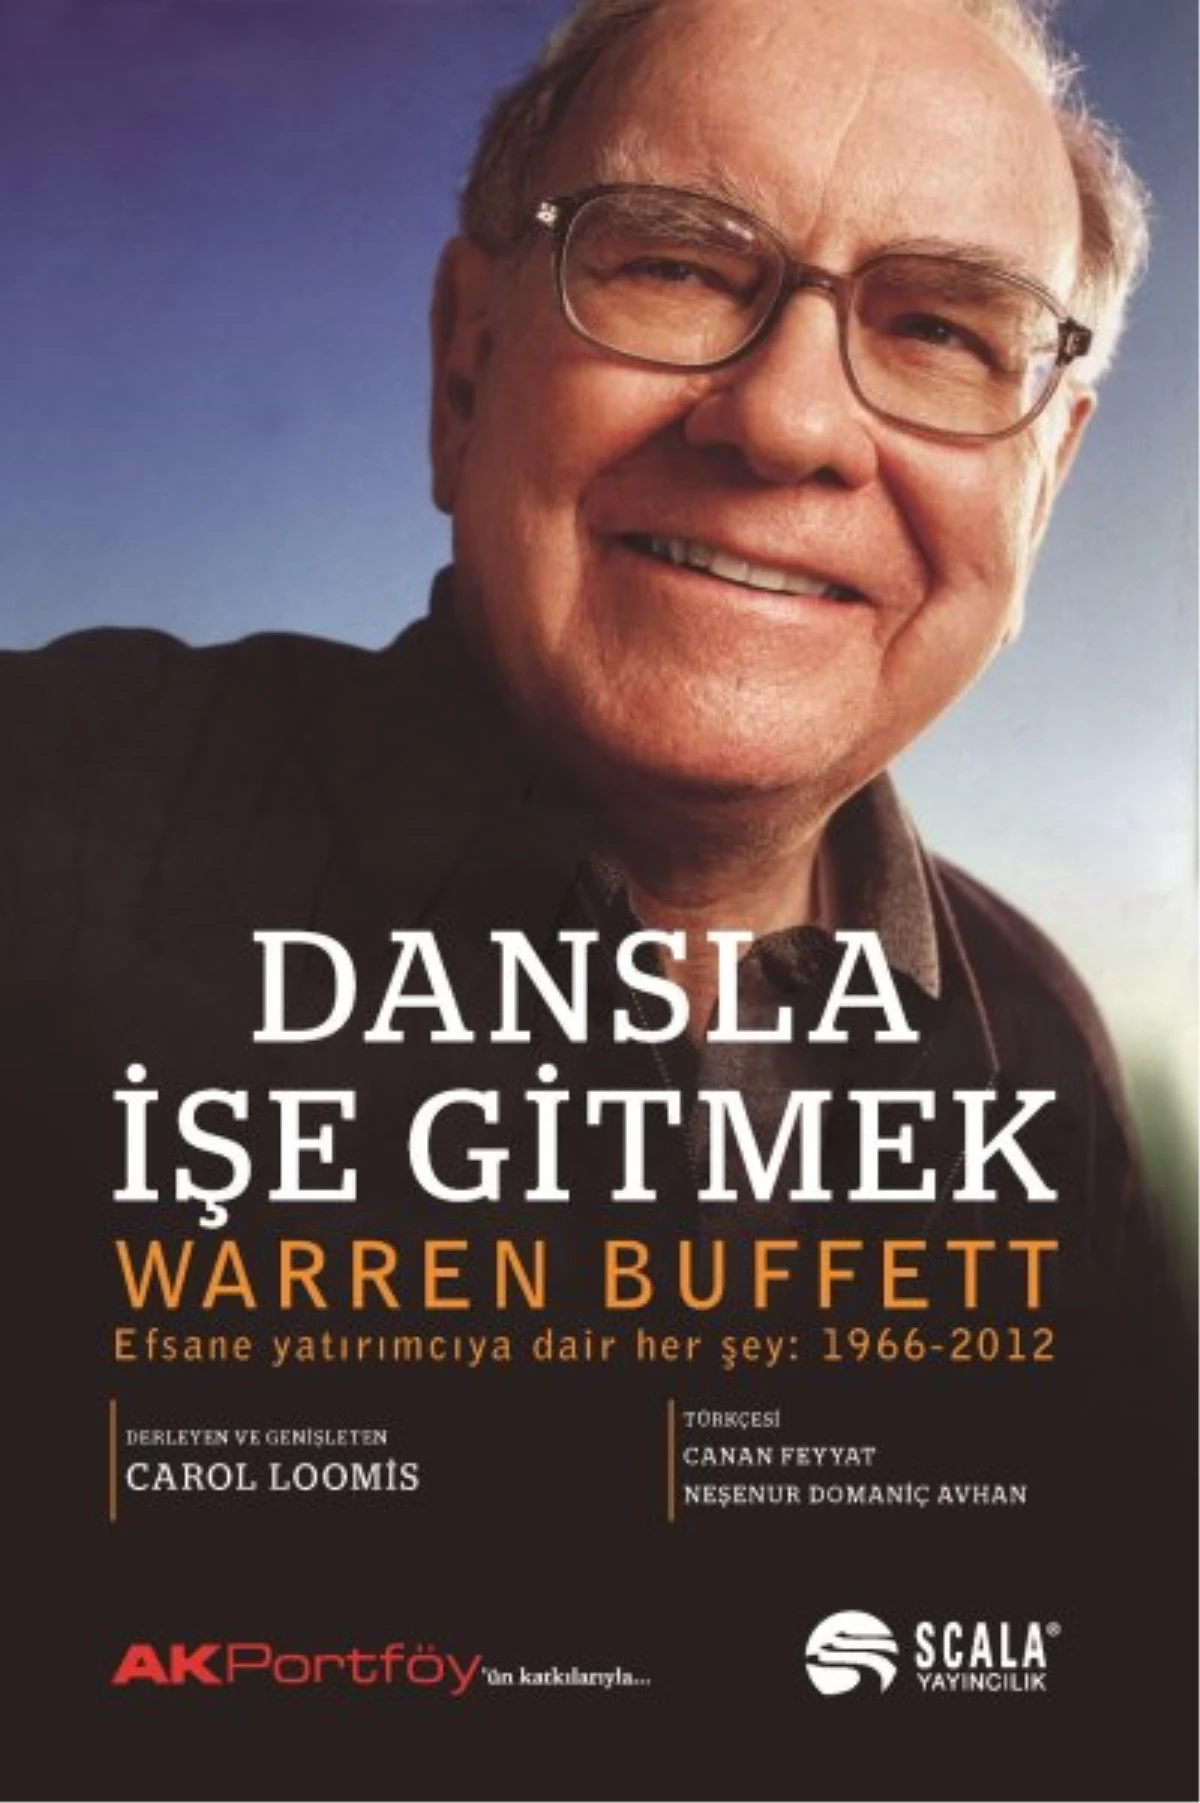 Warren Buffett Dansla İşe Gitmek